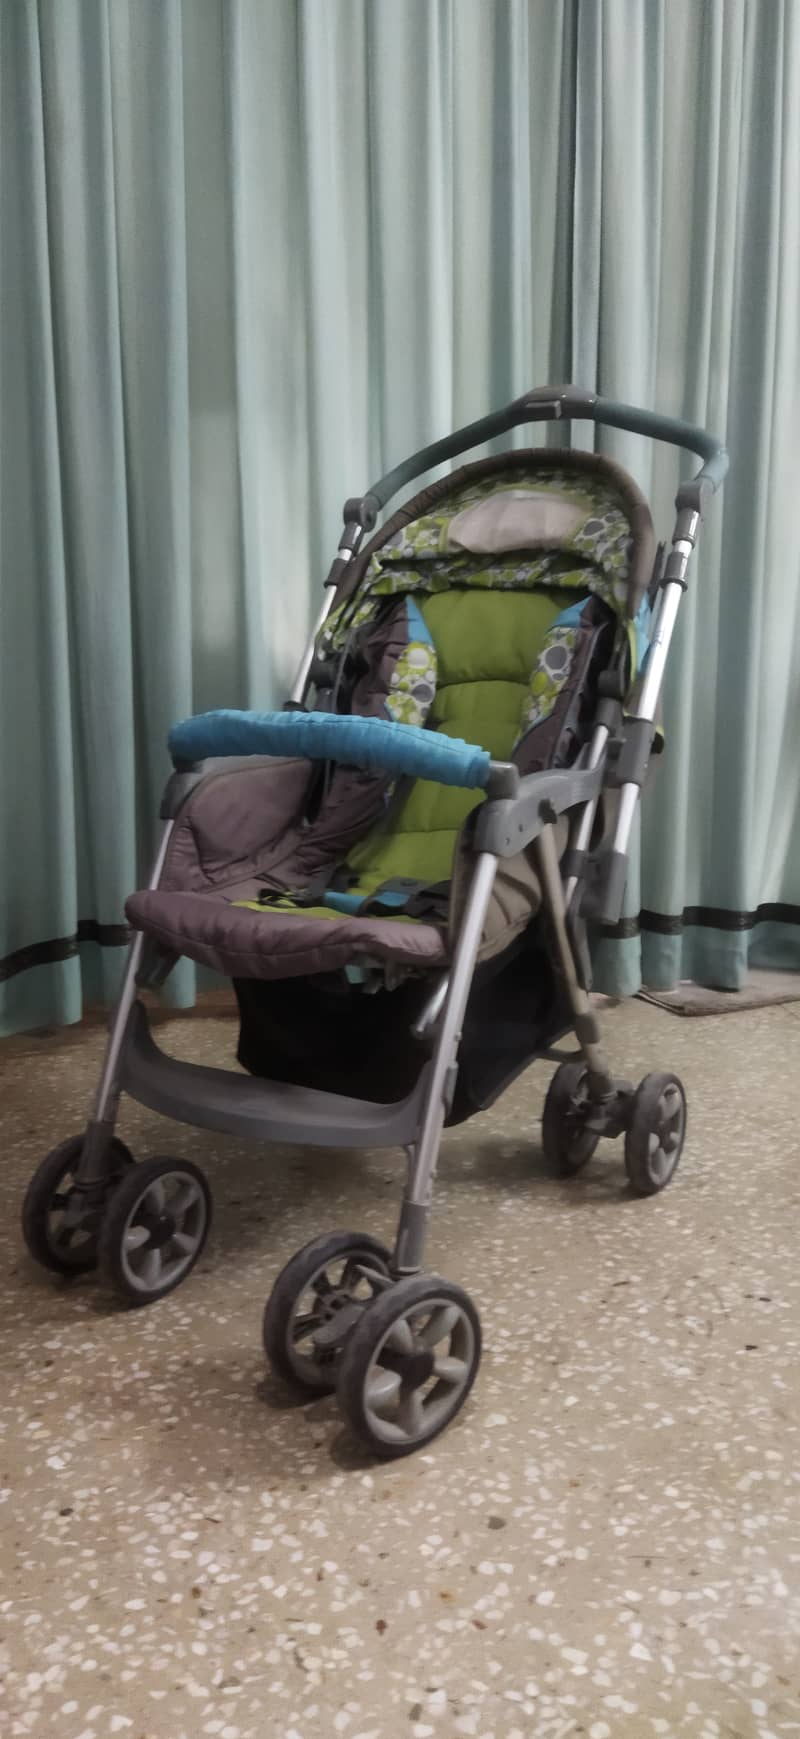 Junior's Brand imported baby stroller / pram 0